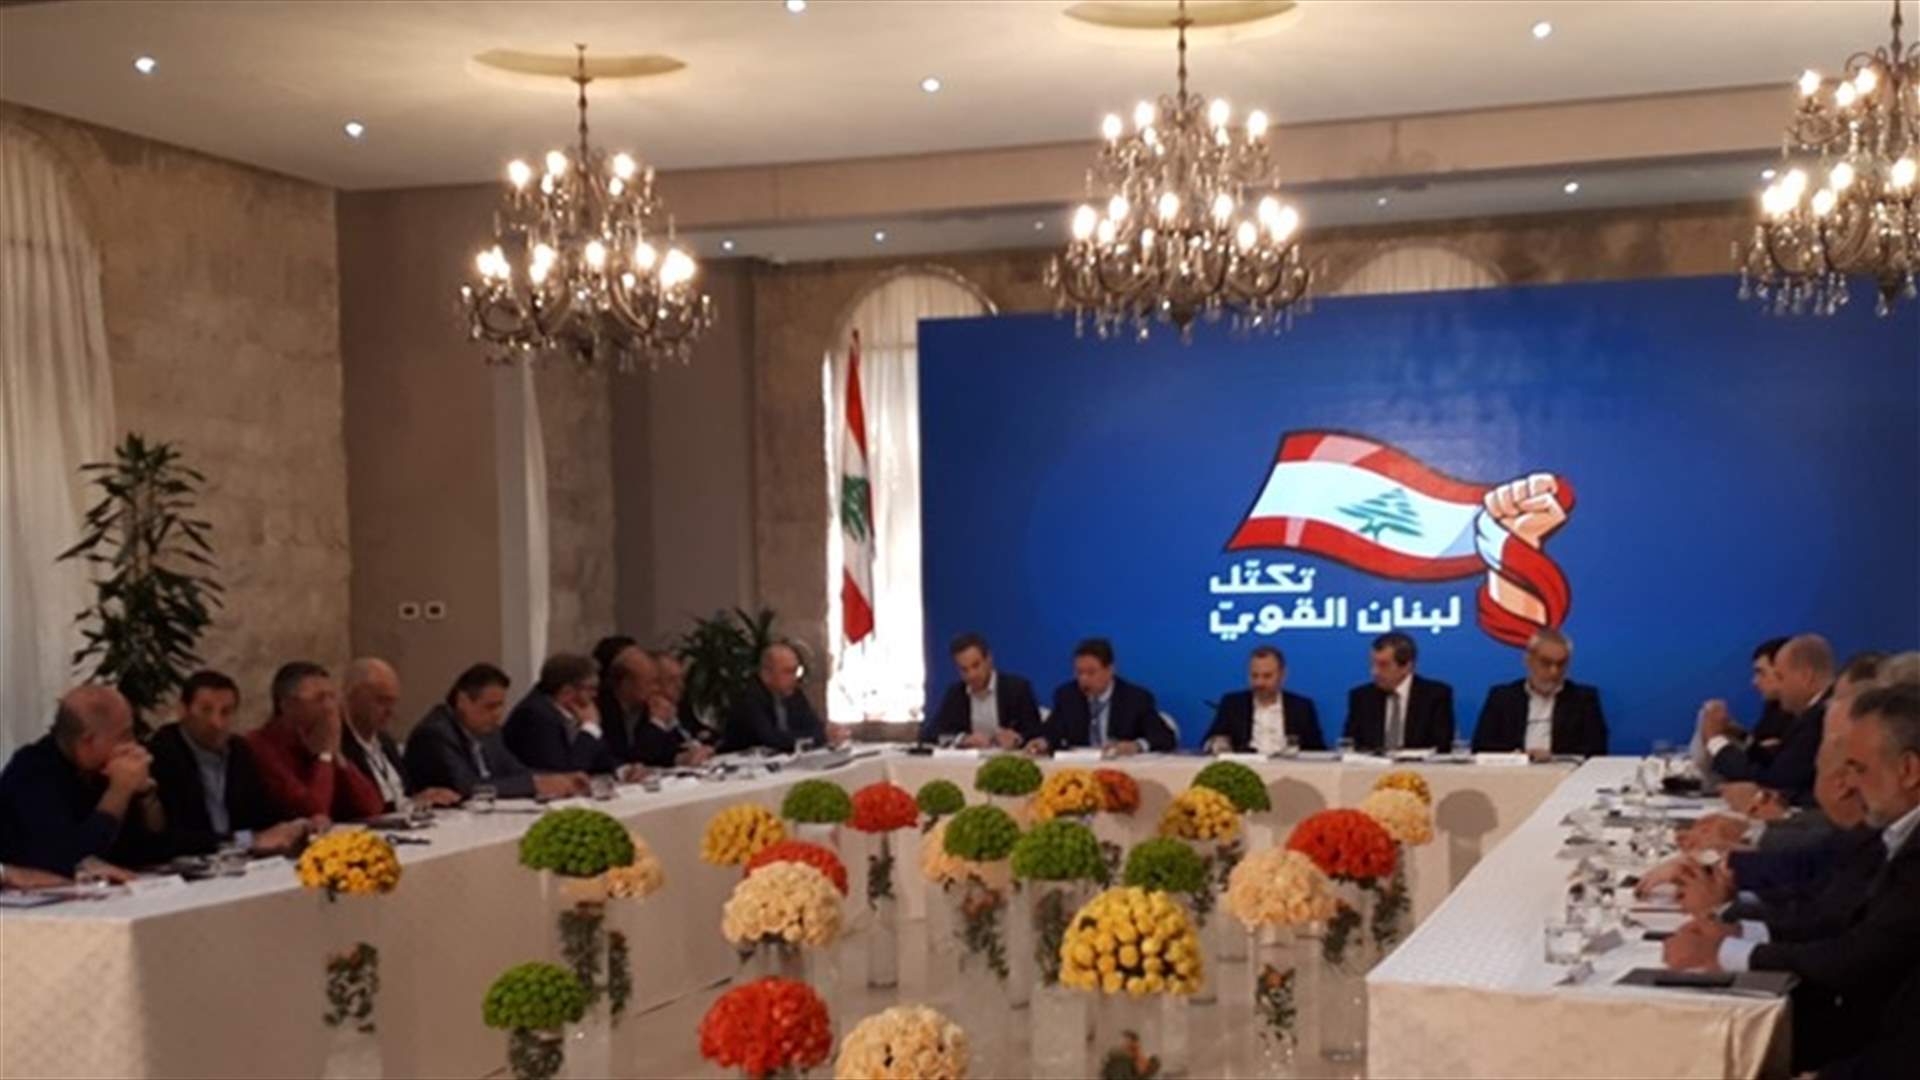 لبنان القوي: لاقرار قانون كشف الحسابات والممتلكات لأهميته في مكافحة الفساد